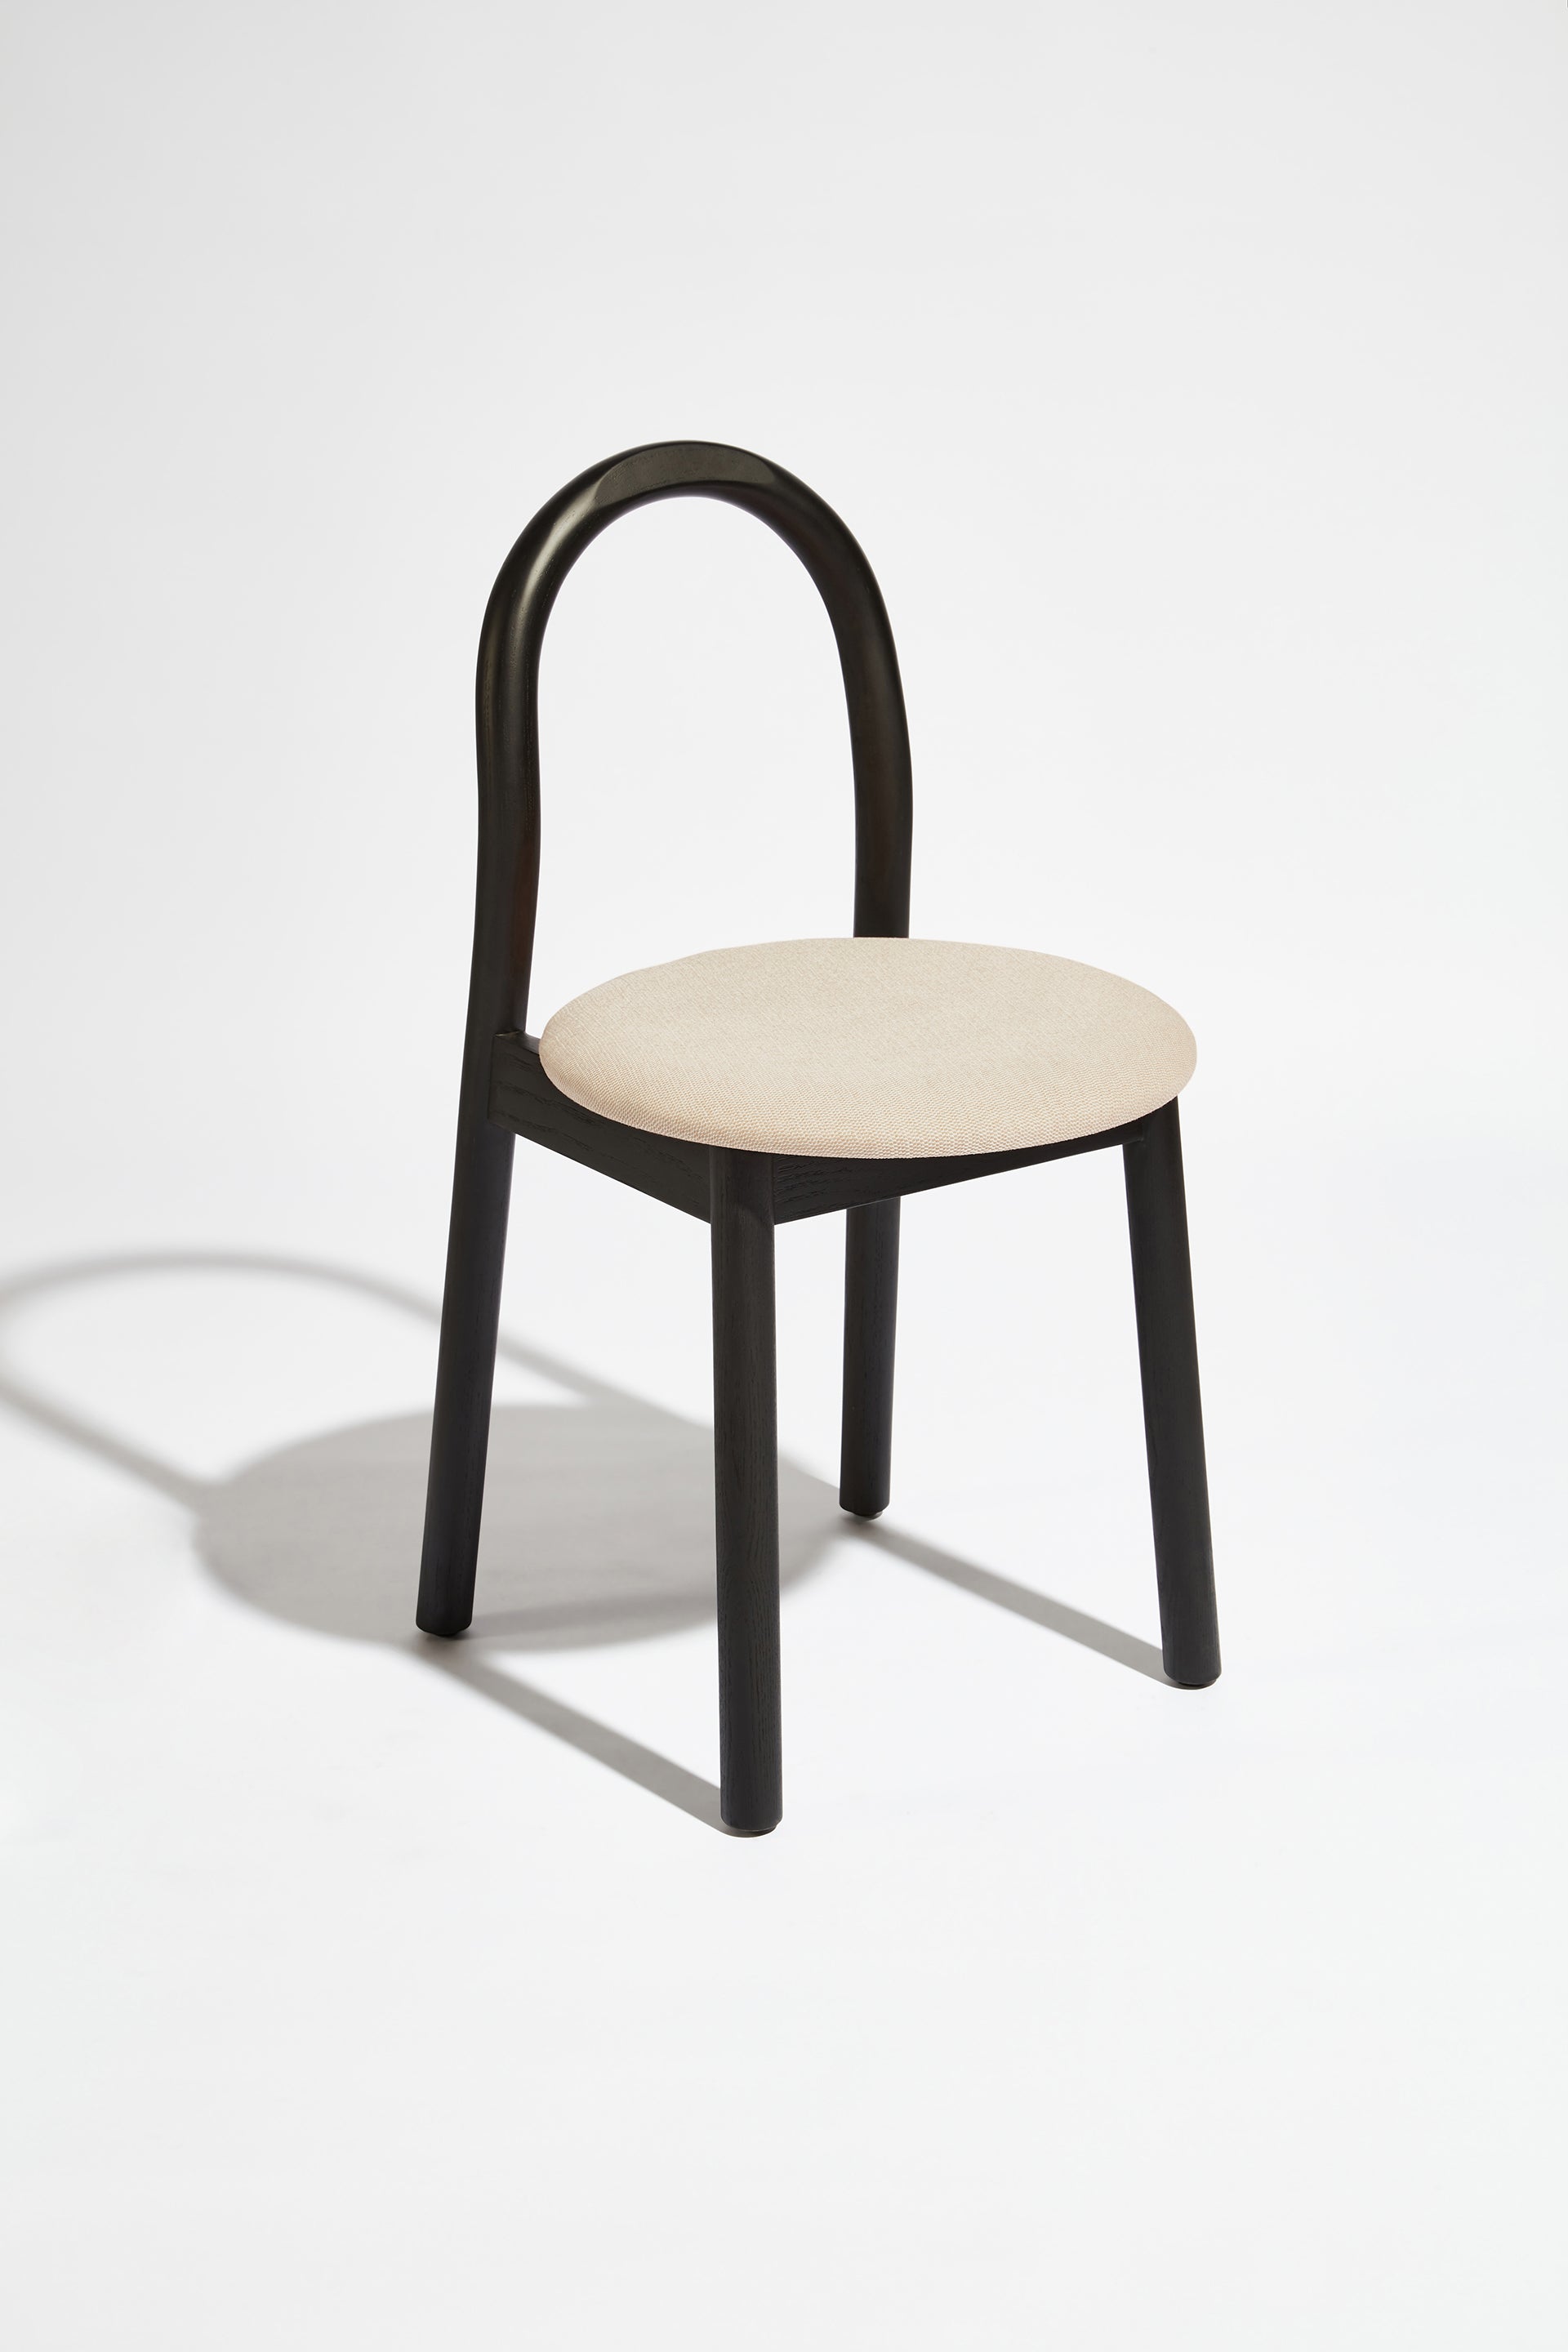 Bobby Chair Upholstered | Black Timber Wooden Dining Chair | Daniel Tucker | DesignByThem ** HF2 Messenger - 078 Tusk / Black Stained Ash